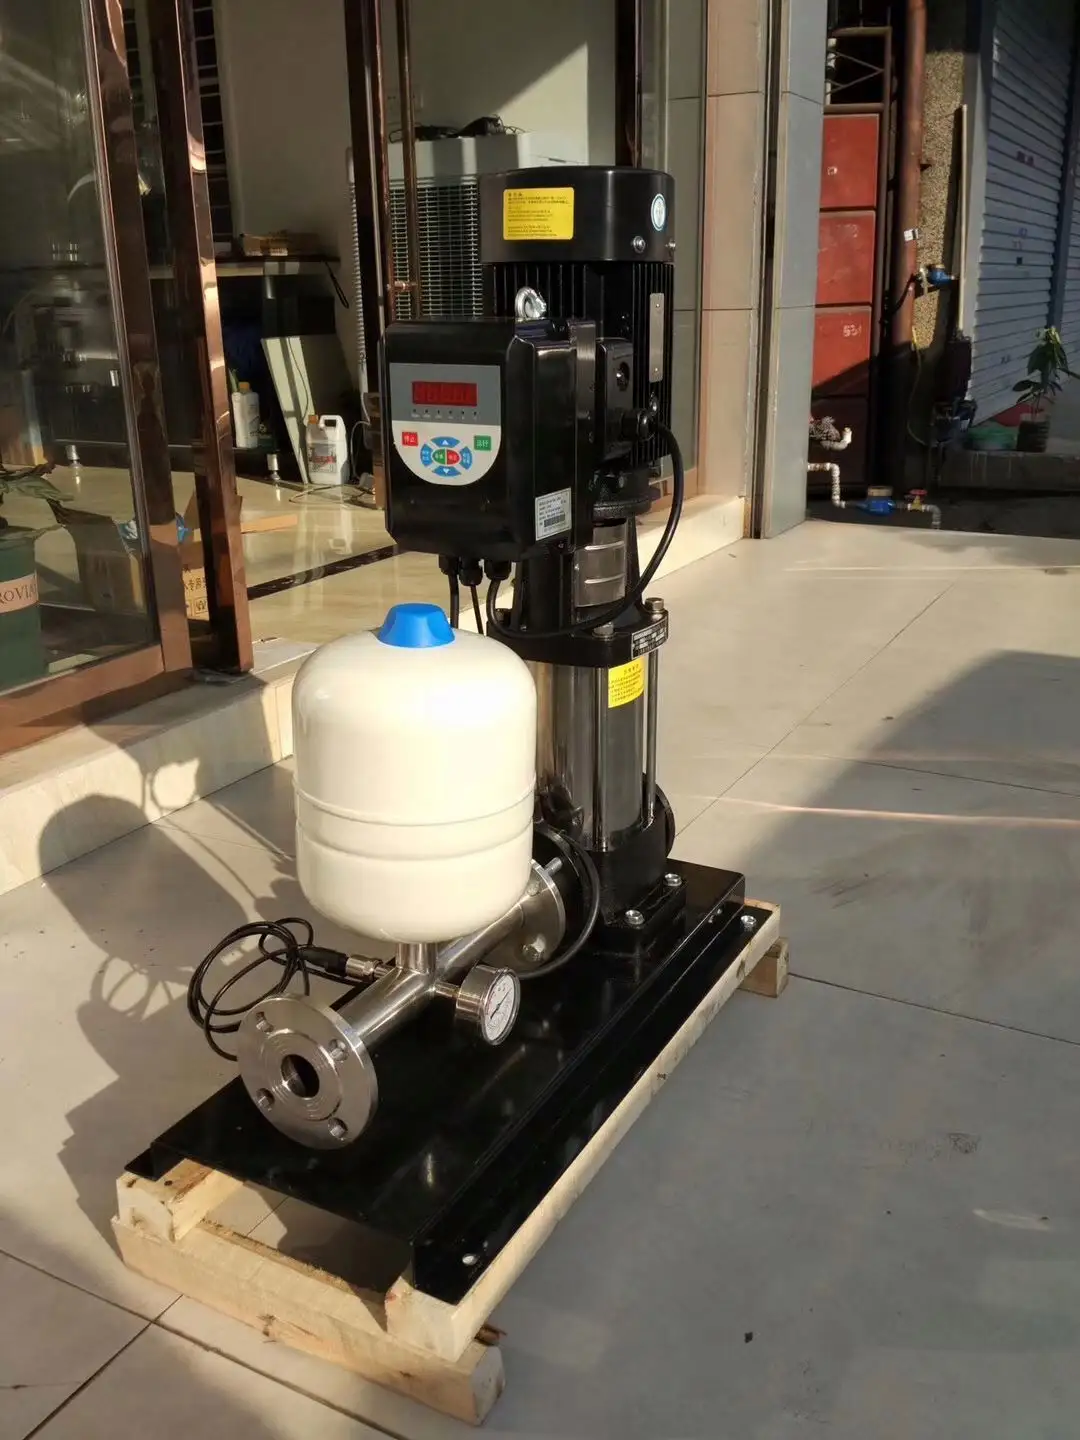 Bomba de frequência variável doméstica para abastecimento de água de pressão constante Máquina multifuncional vertical